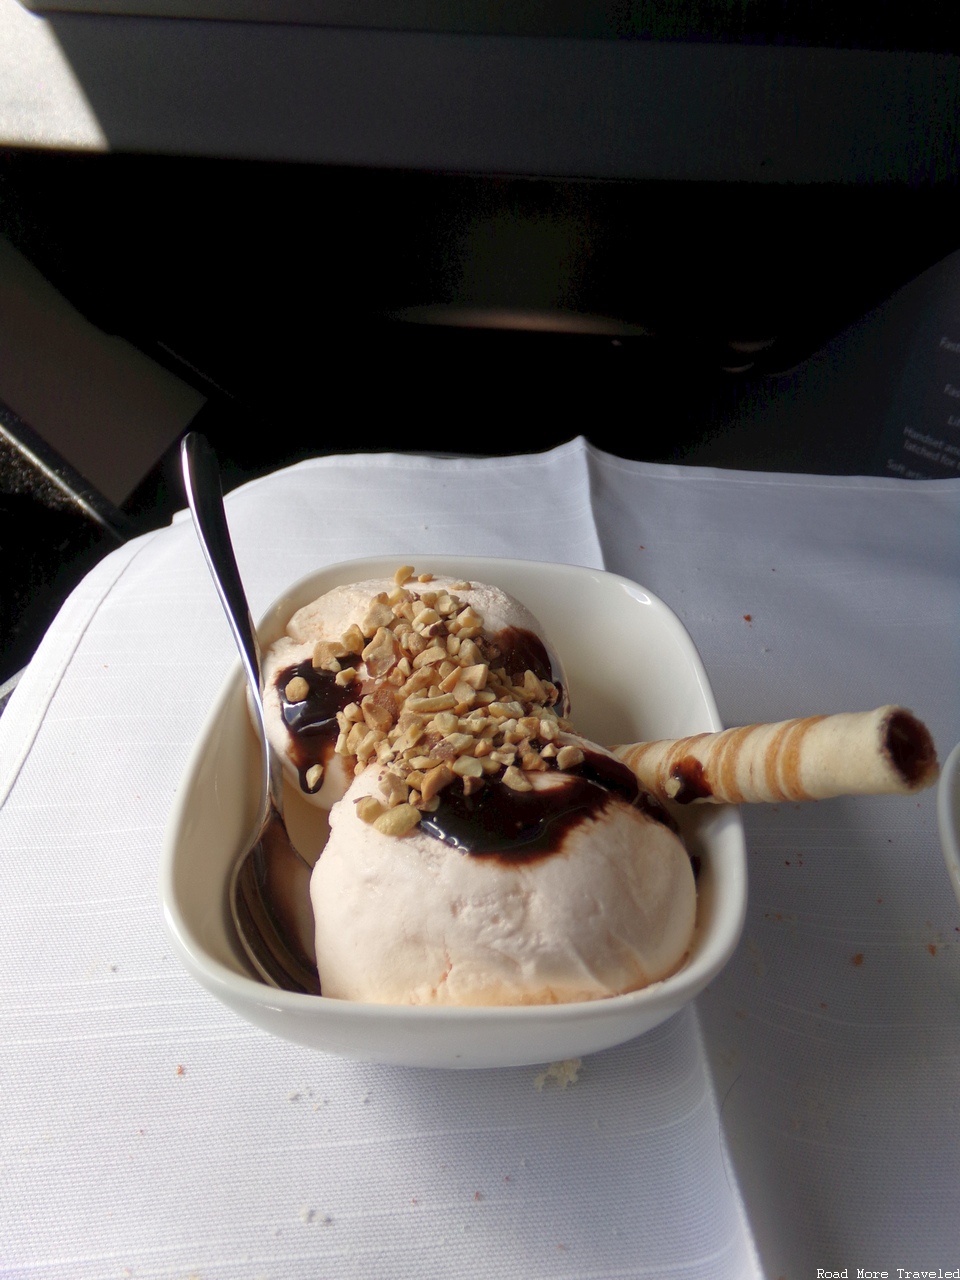 Delta One A350 meal - ice cream sundae